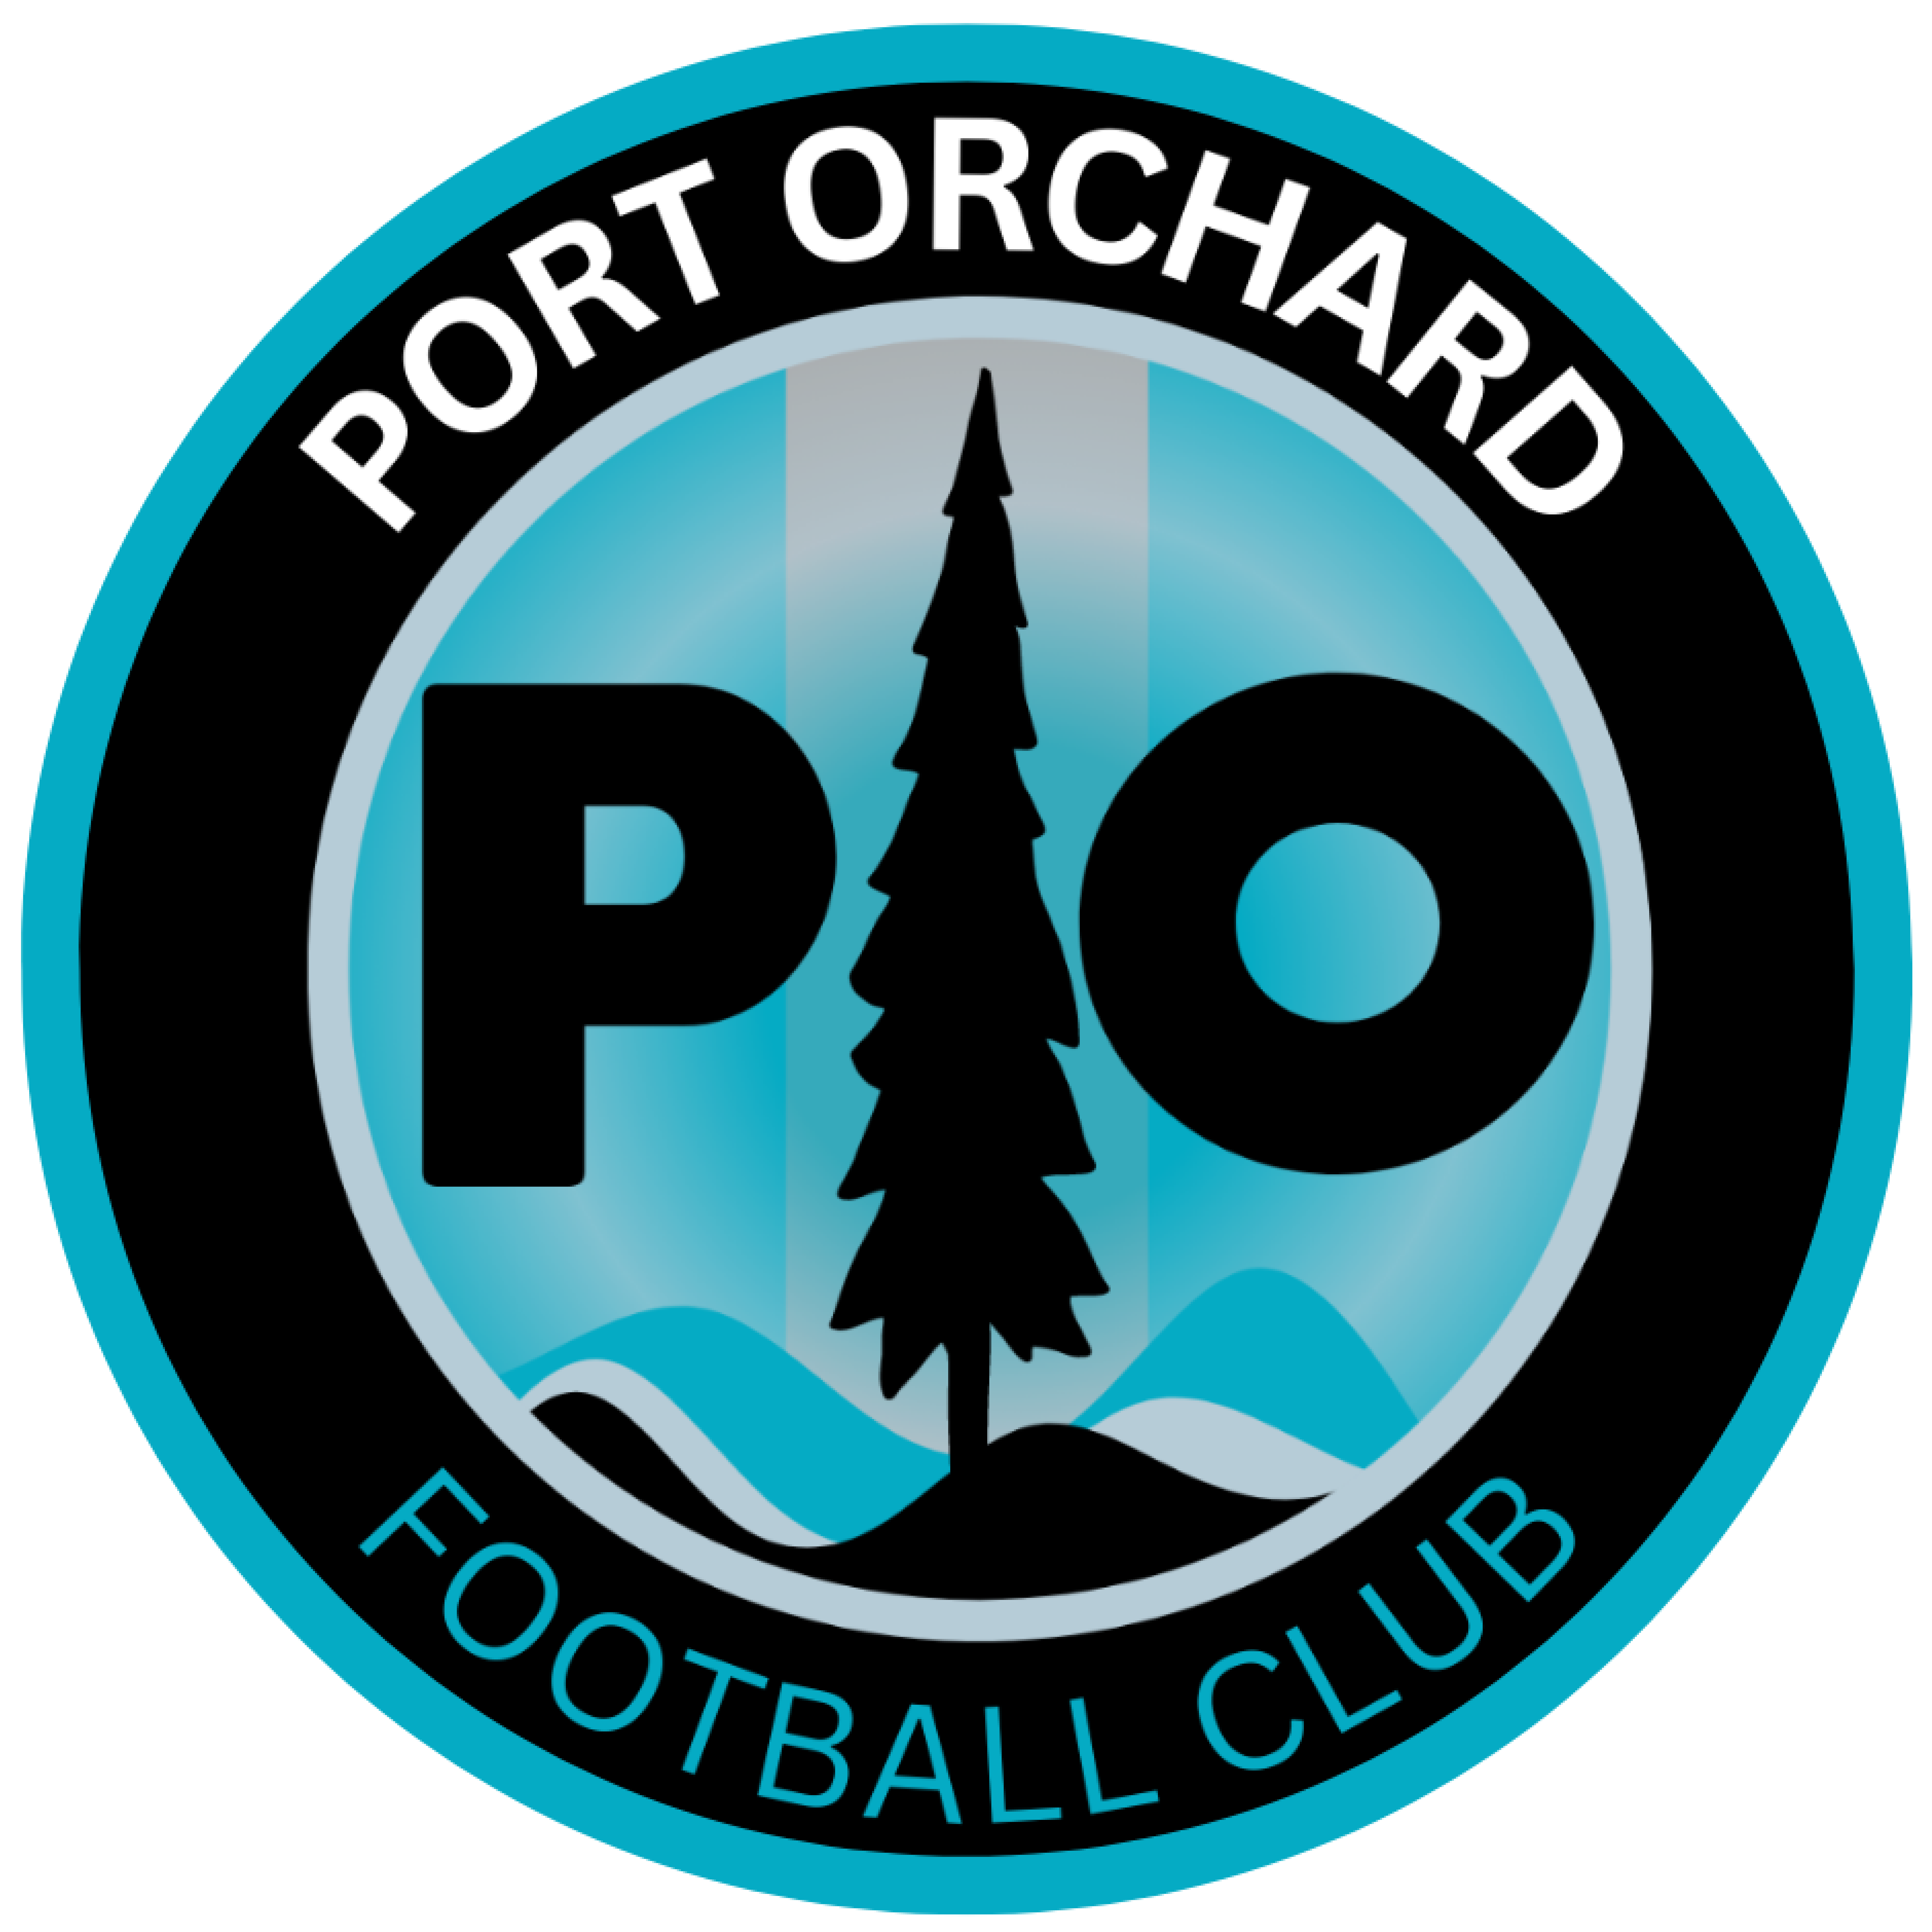 Port Orchard FC reaches Cascadia Premier League Division 1 title game